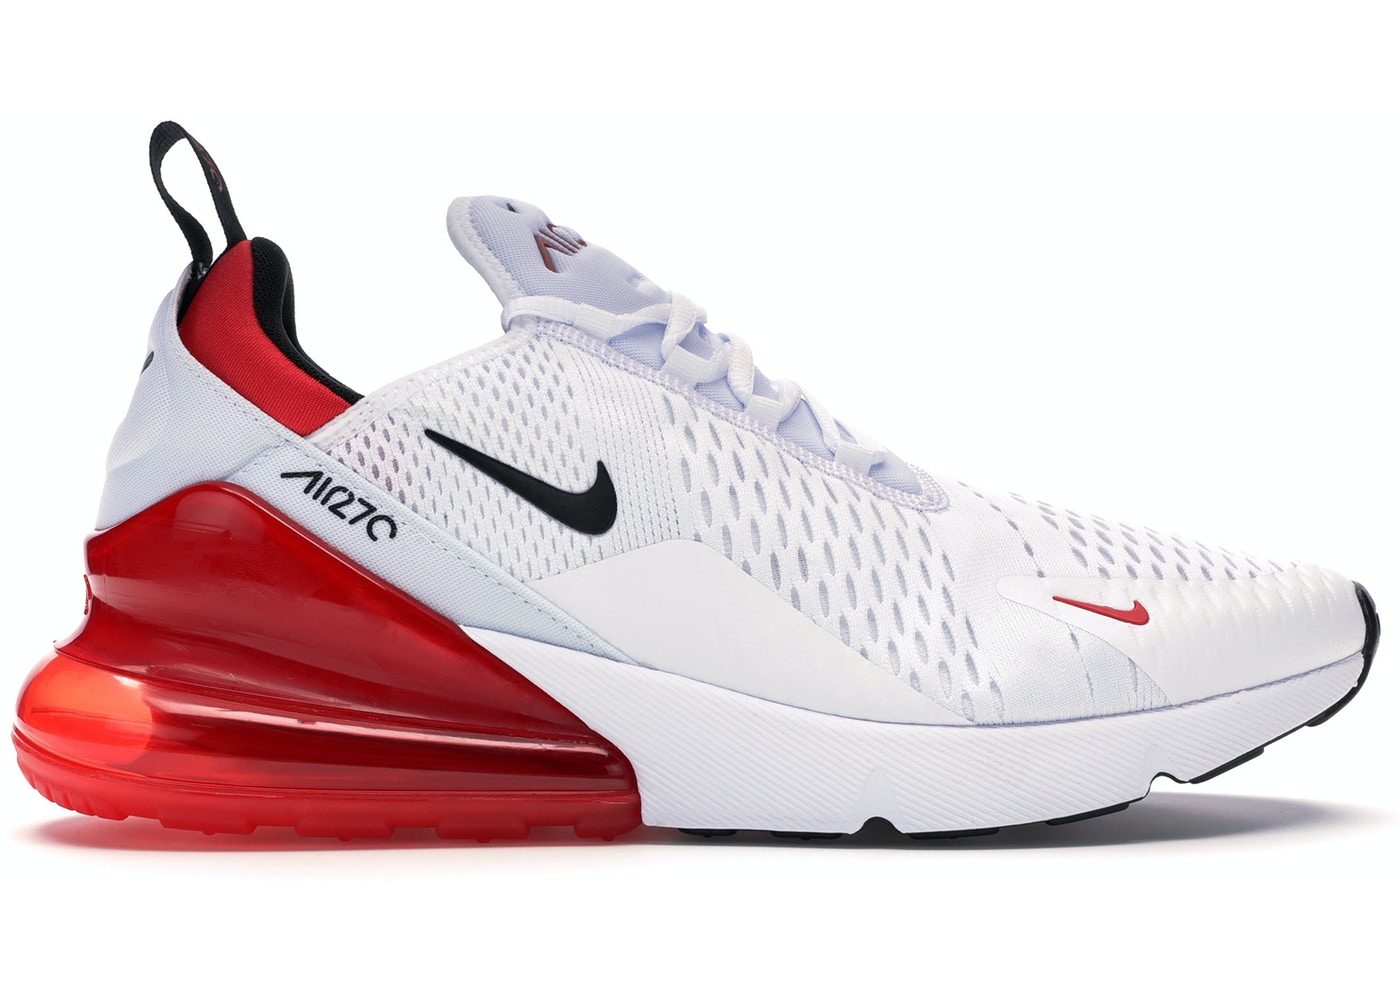 Sepatu Pria Nike_Air Max 270 White Red For Man - Sepatu Keren - Sepatu  Olahraga Pria - Sepatu Pria Import - Sepatu Model Terbaru Airmax 270 |  Lazada Indonesia